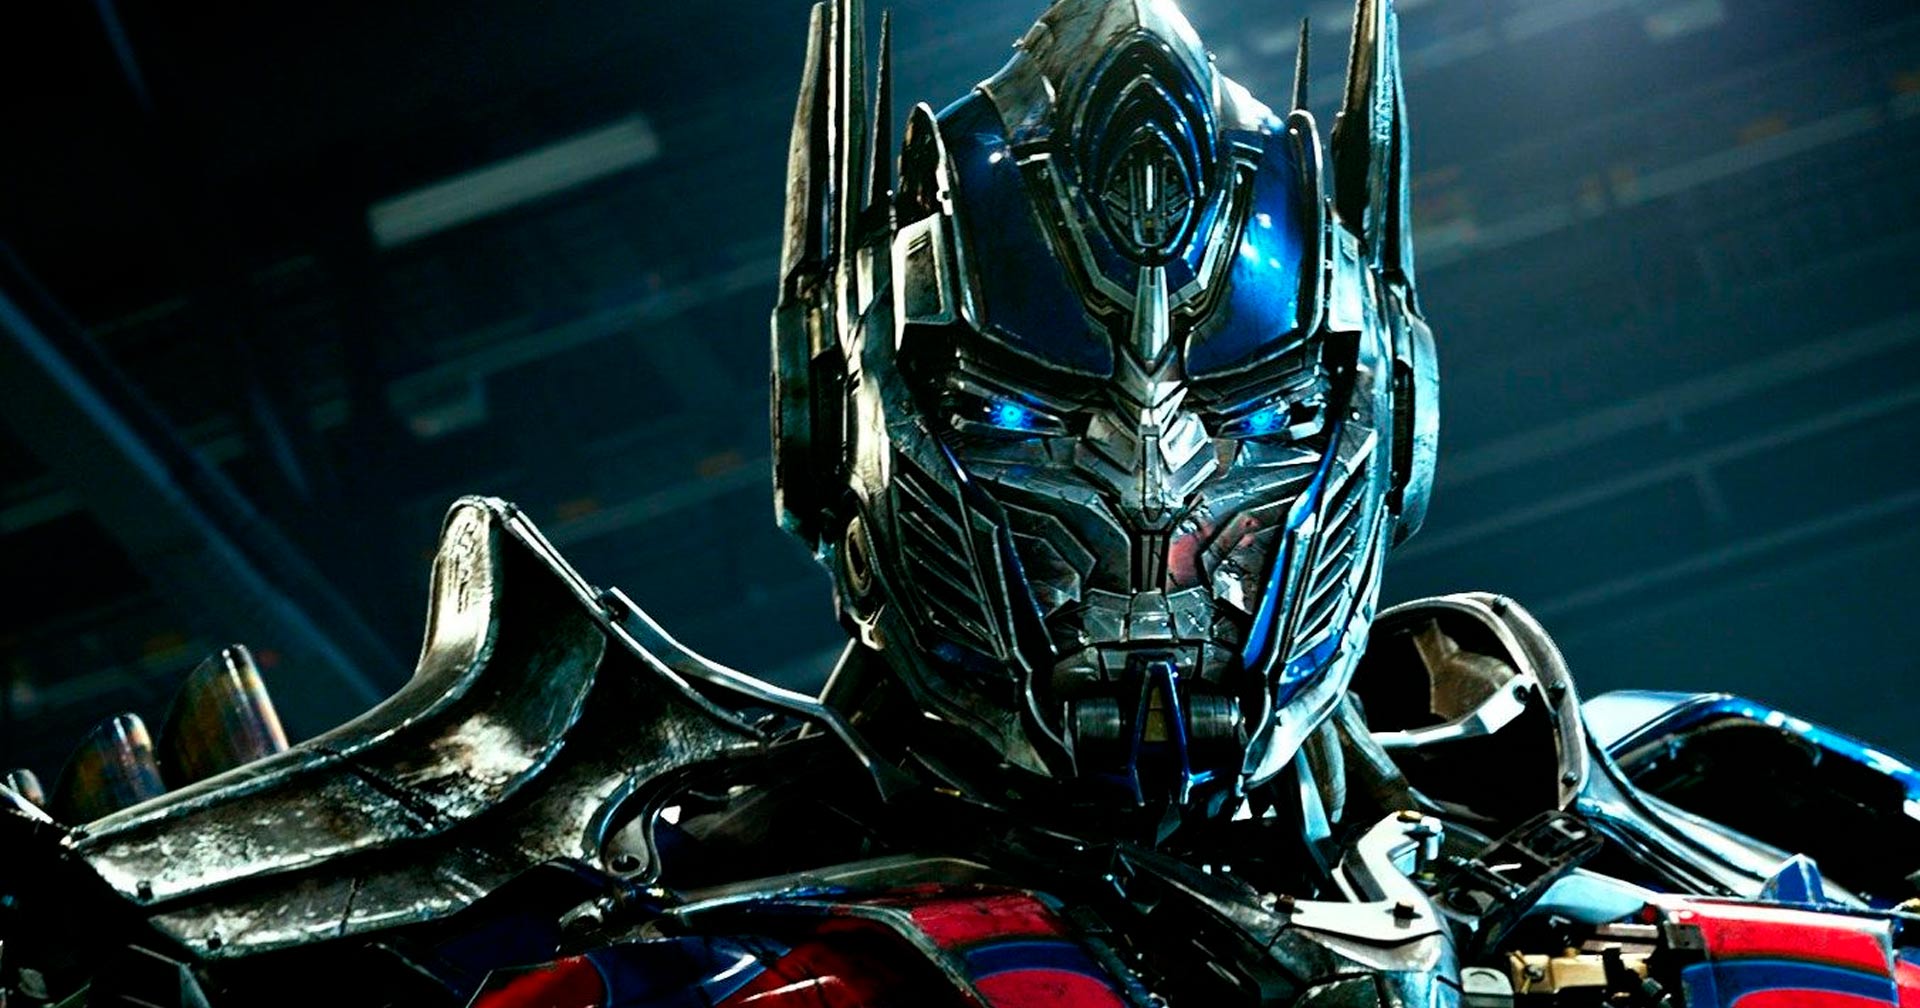 Transformers 7: Próximo filme da série ganha data de estreia